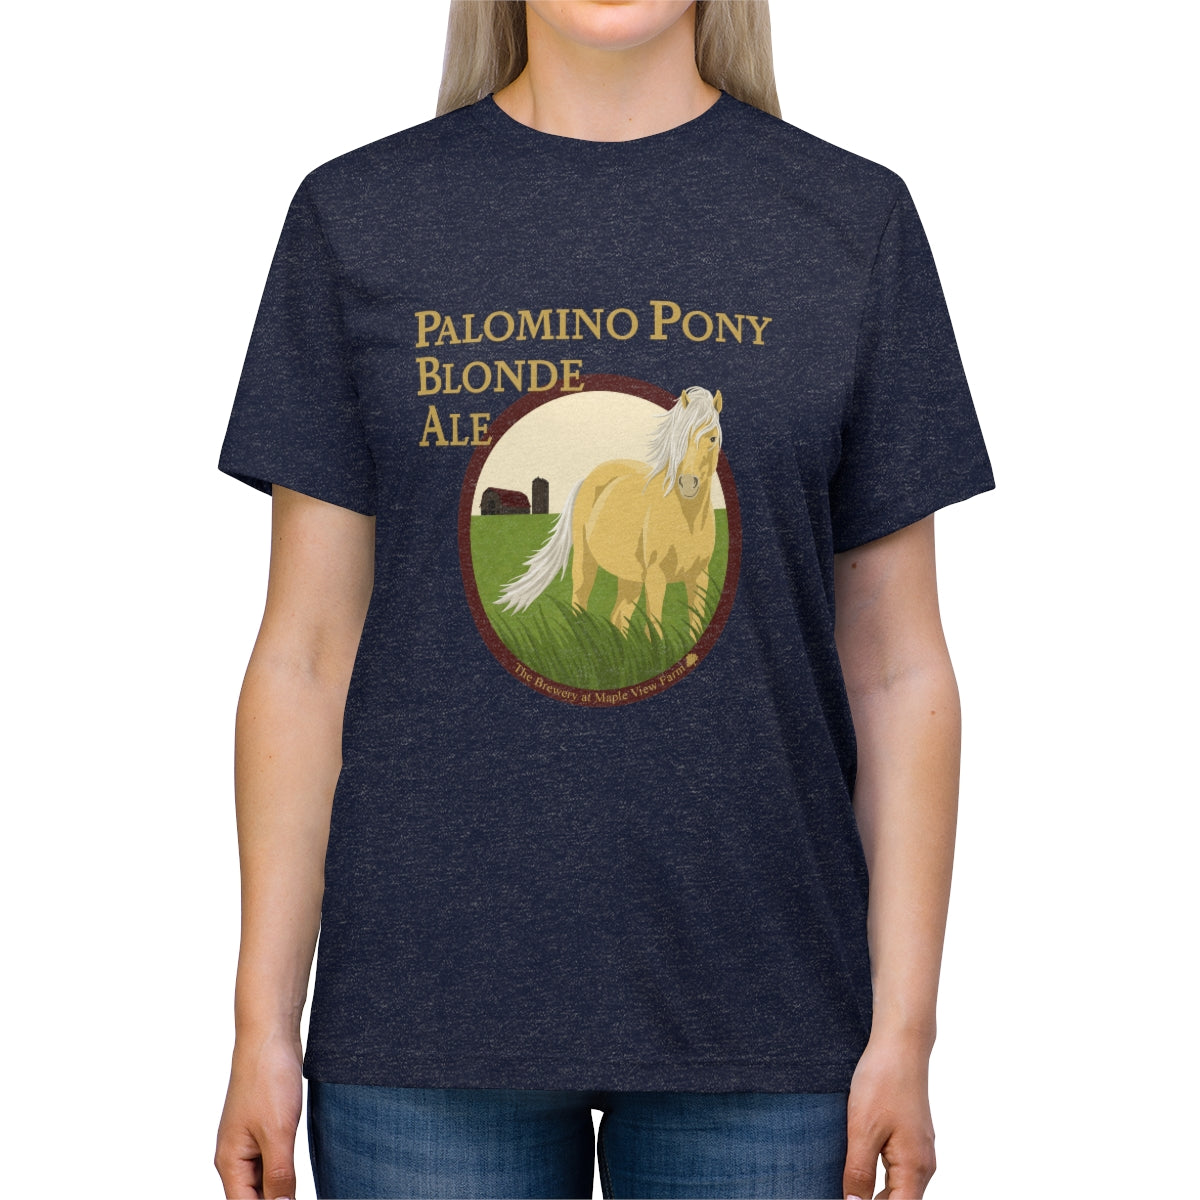 Palomino Pony Blonde Ale